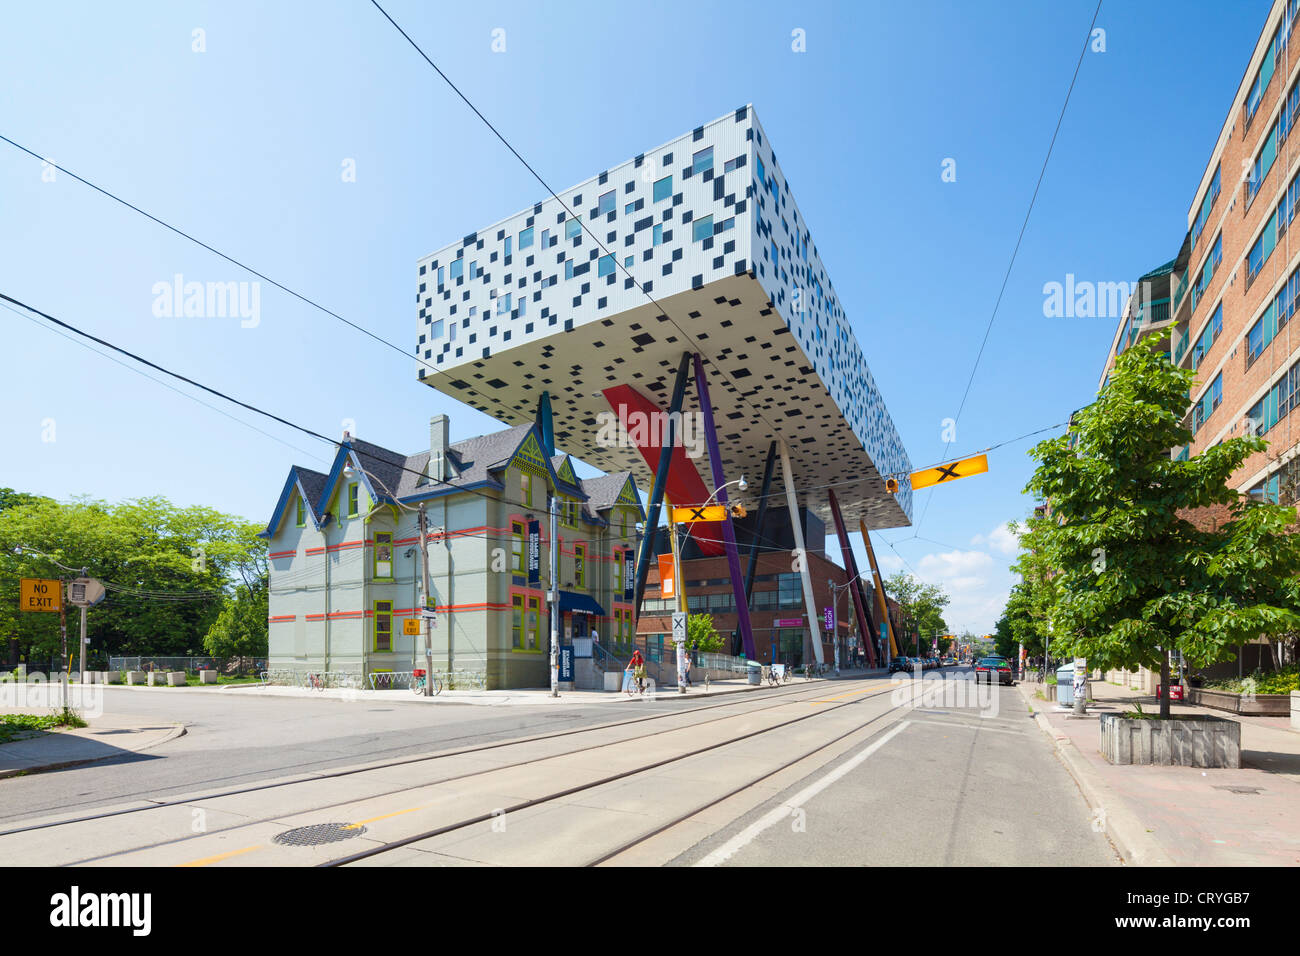 Sharp Centre for Design, Toronto Stock Photo